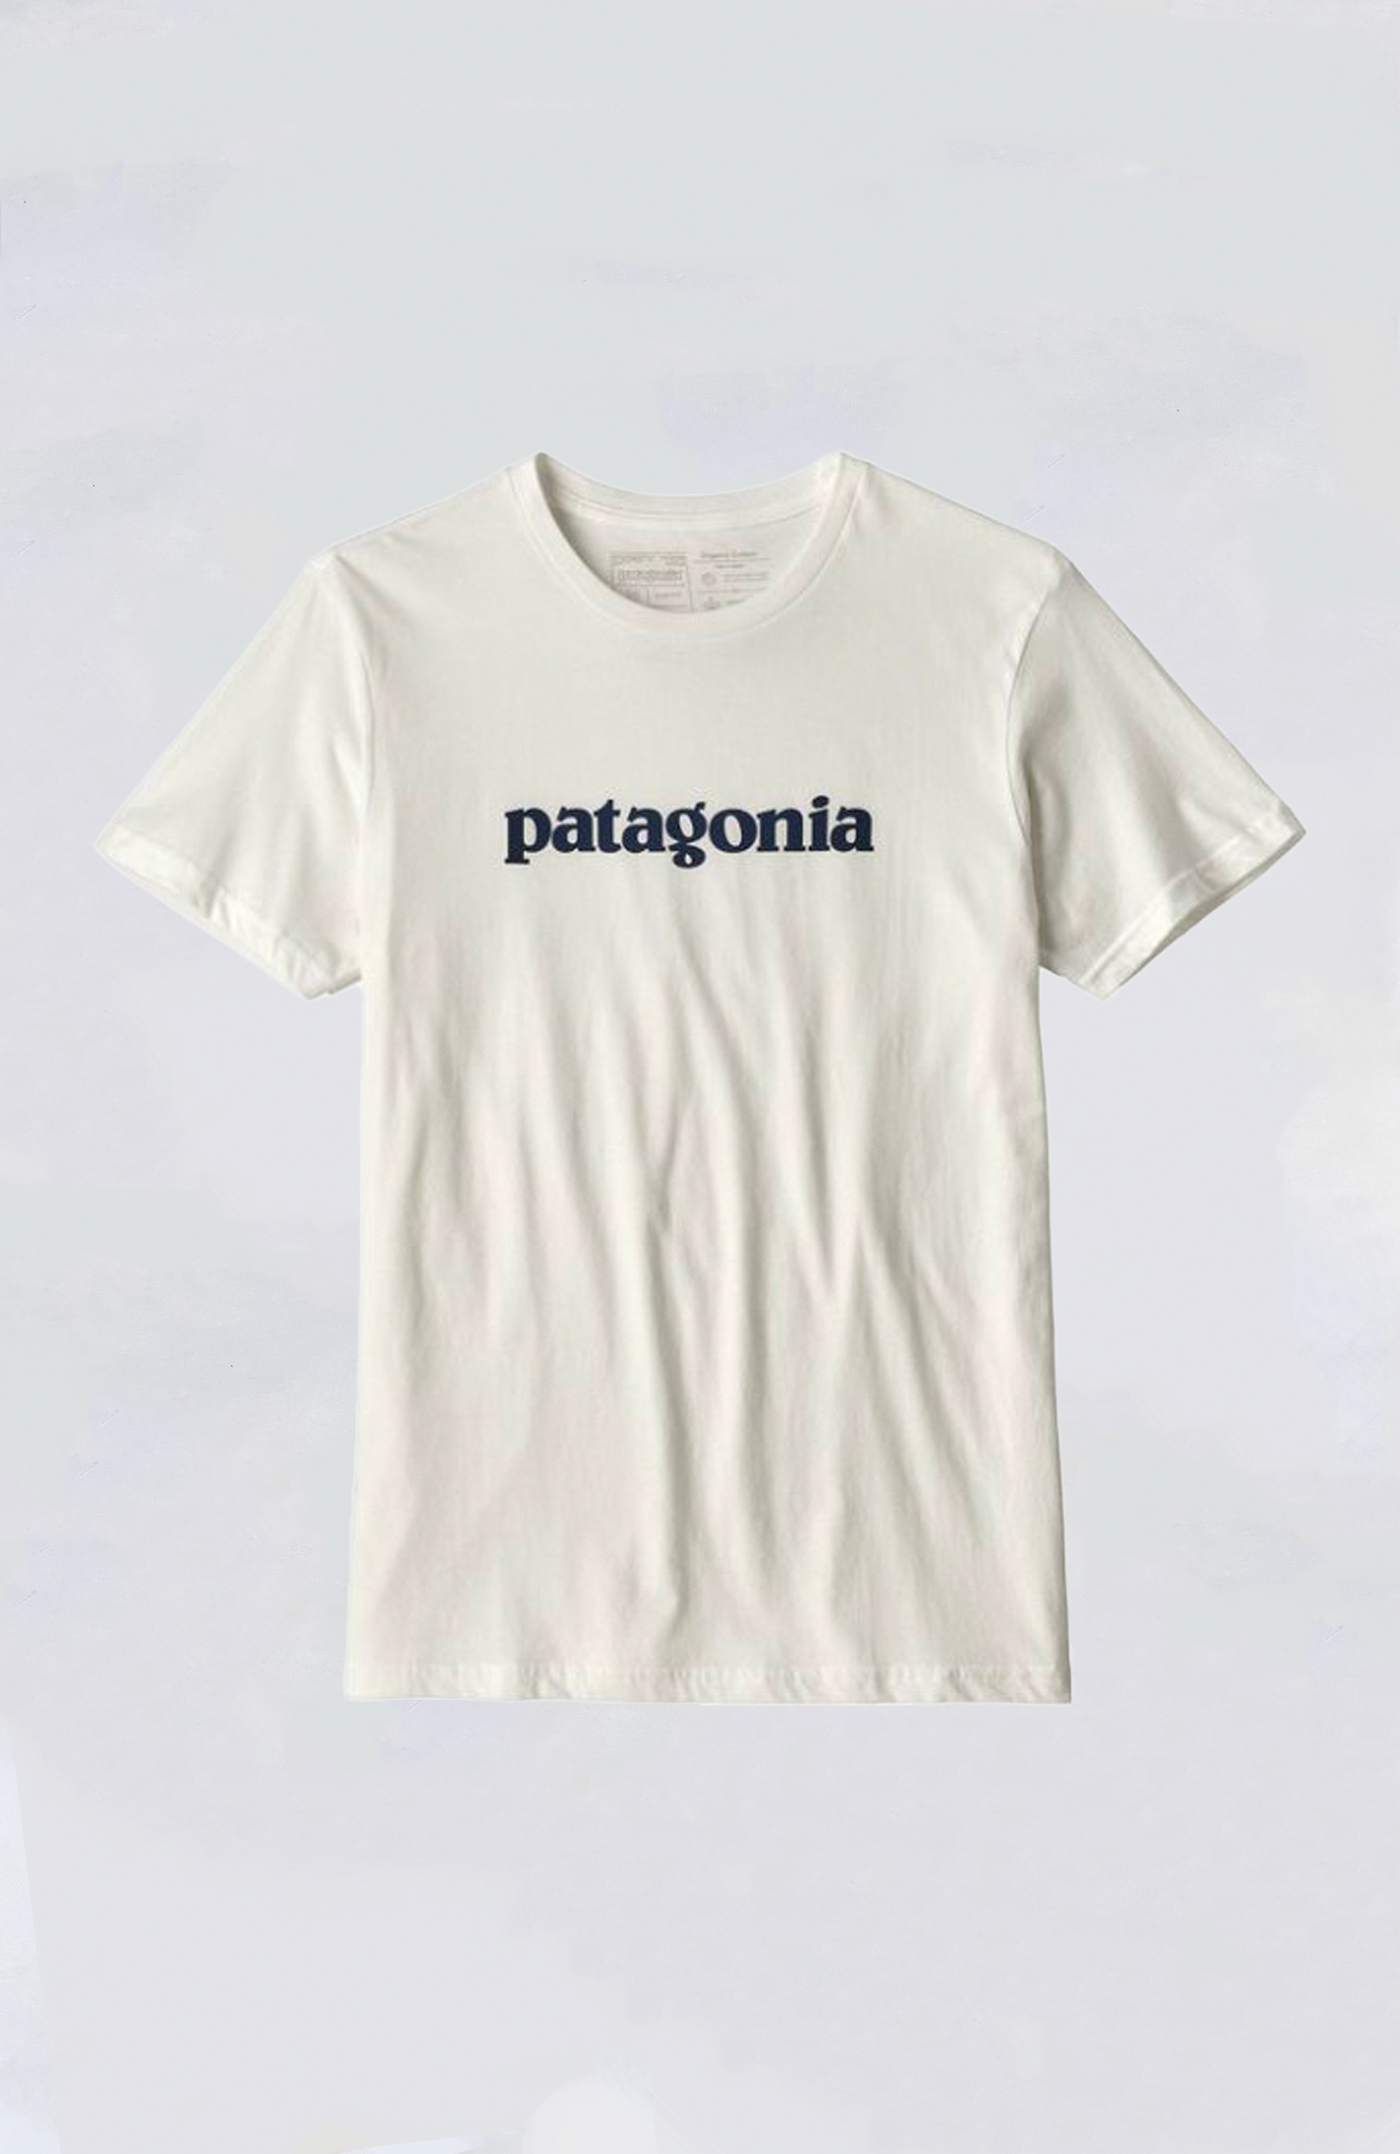 Patagonia - Text Logo Organic Tee